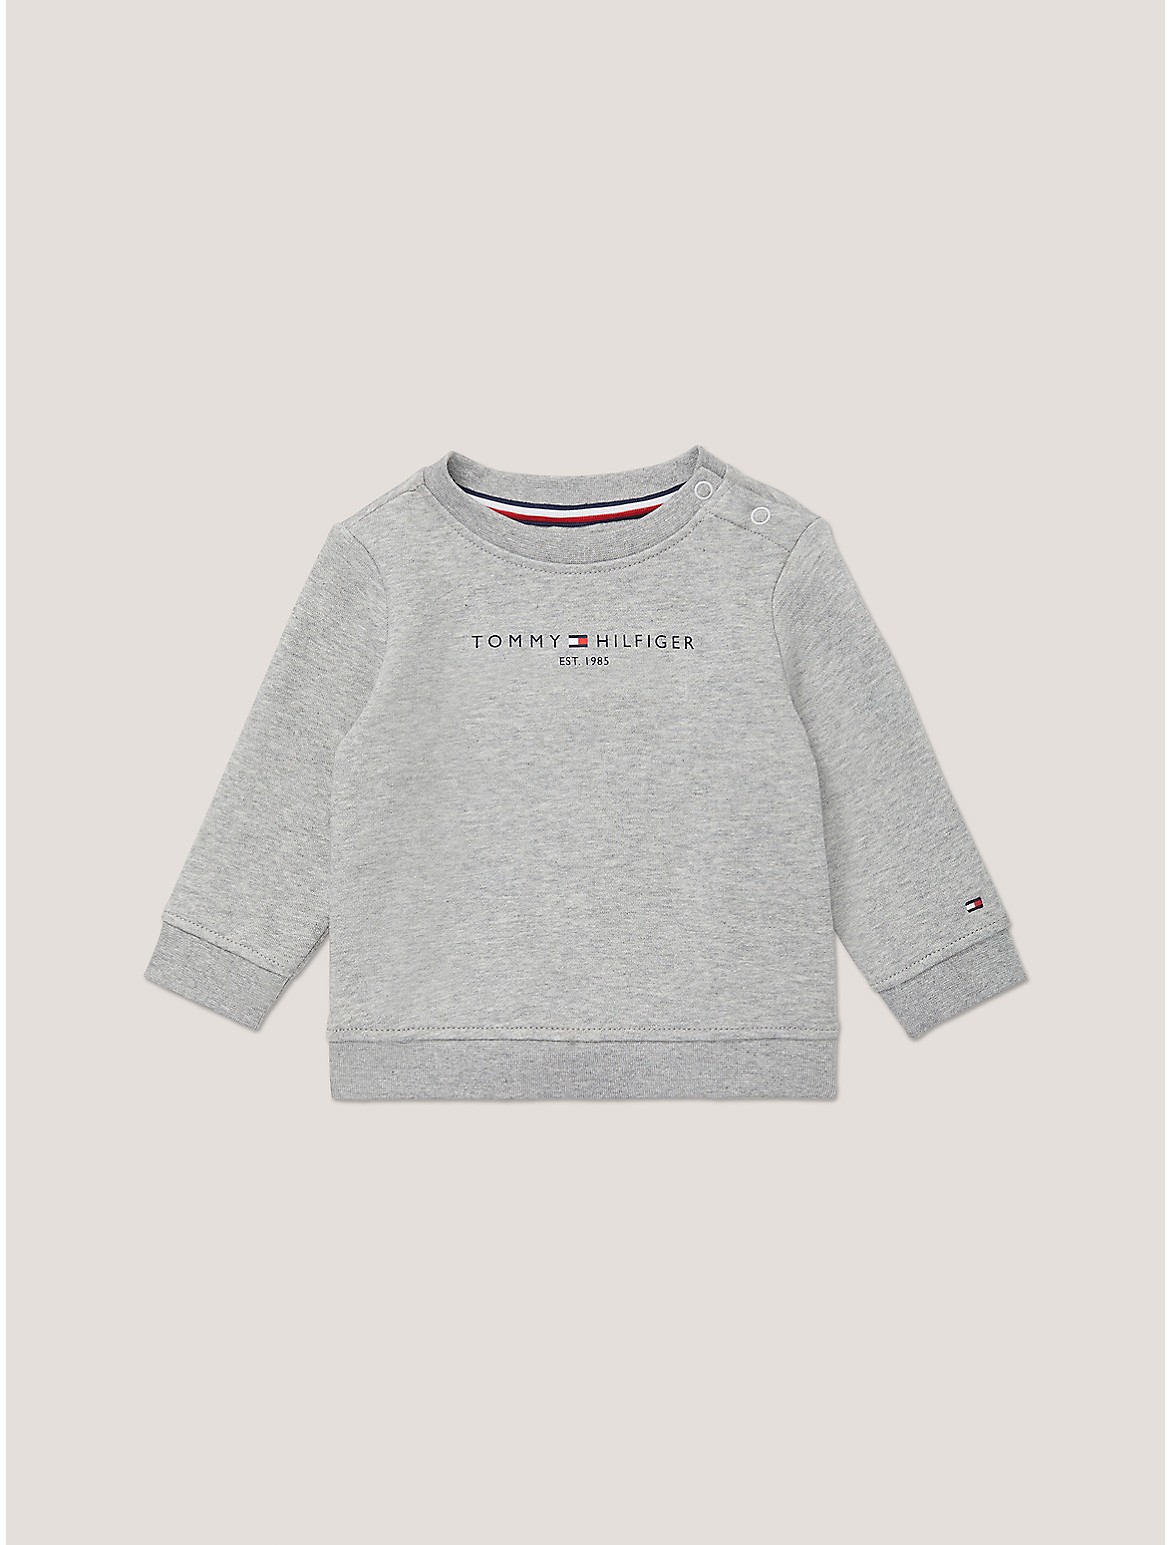 Tommy Hilfiger Boys' Babies' Tommy Logo Sweatshirt - Grey - 24M